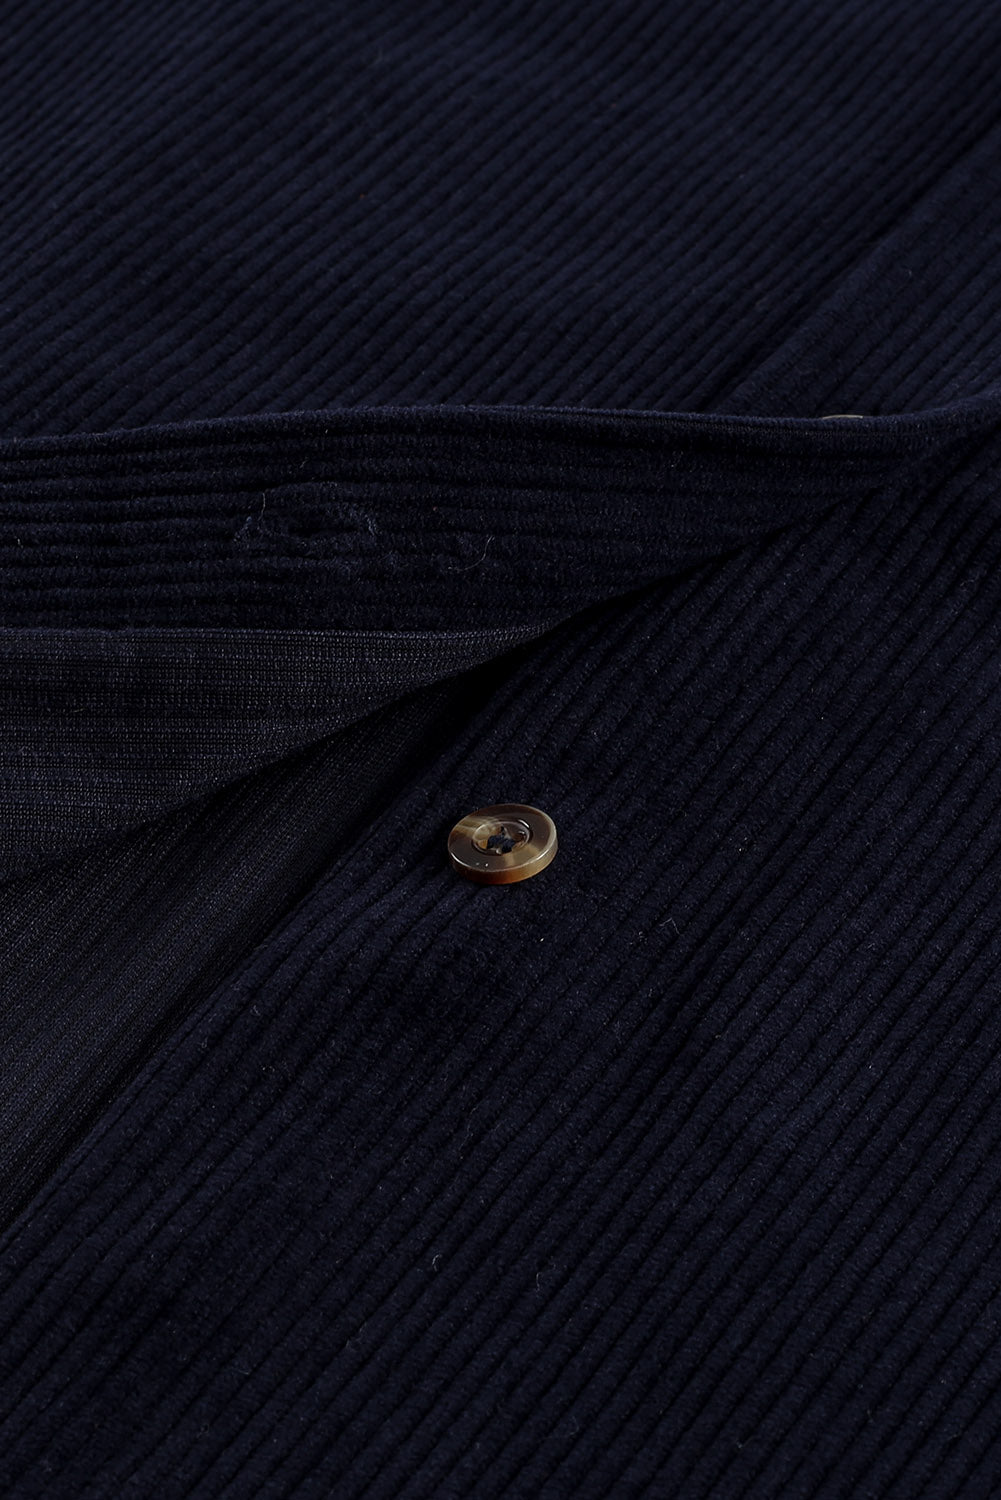 Temno modra srajca z žepi na gumbe